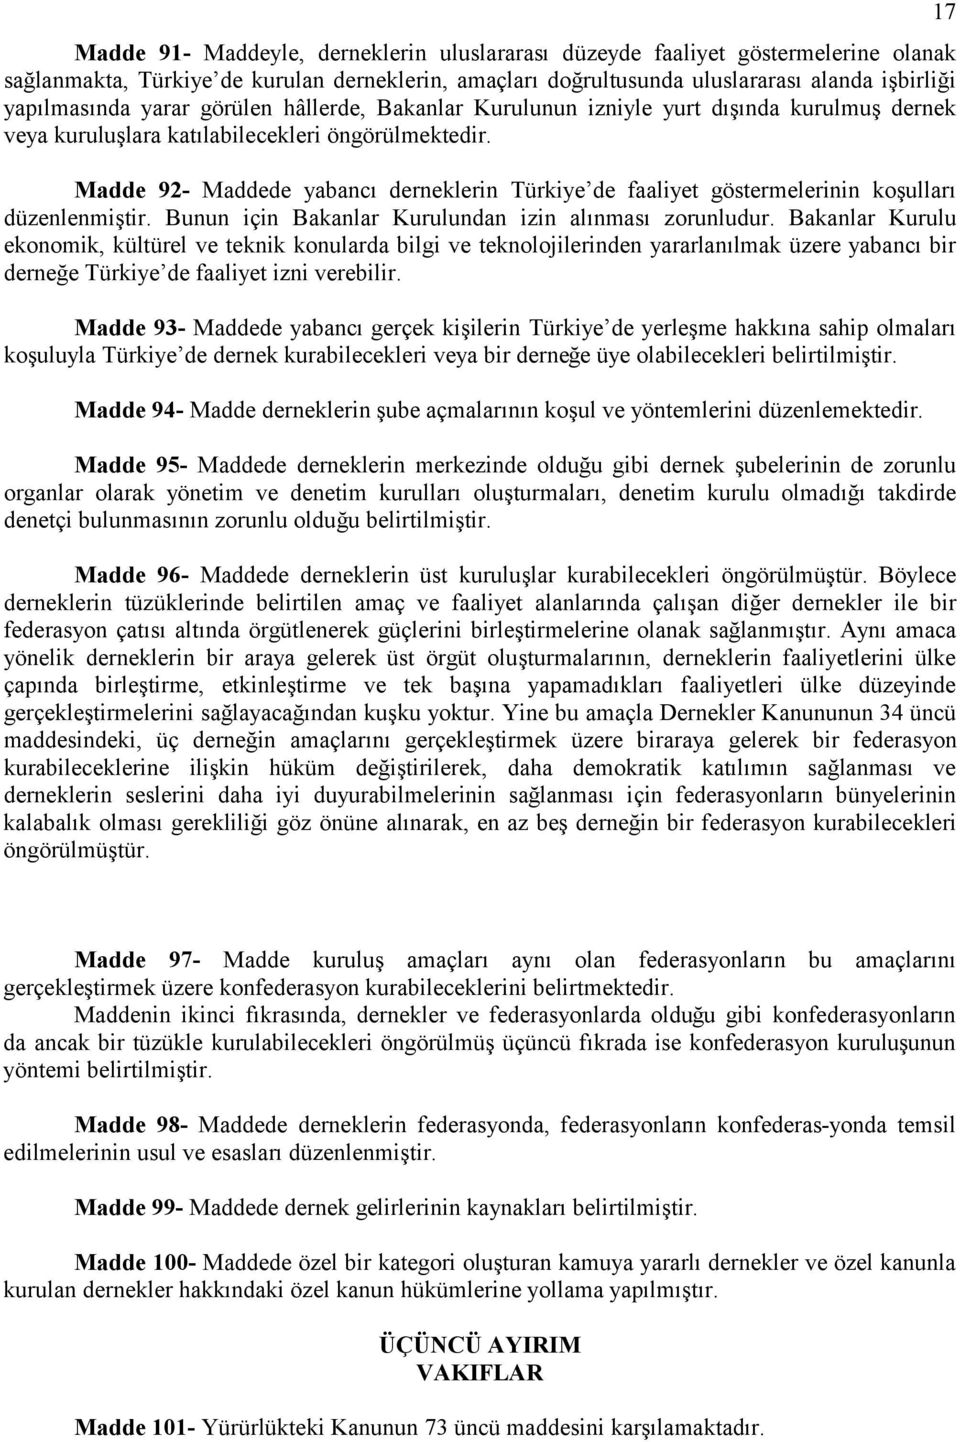 Madde 92- Maddede yabancı derneklerin Türkiye de faaliyet göstermelerinin koşulları dü zenlenmiştir. Bunun için Bakanlar Kurulundan izin alınması zorunludur.